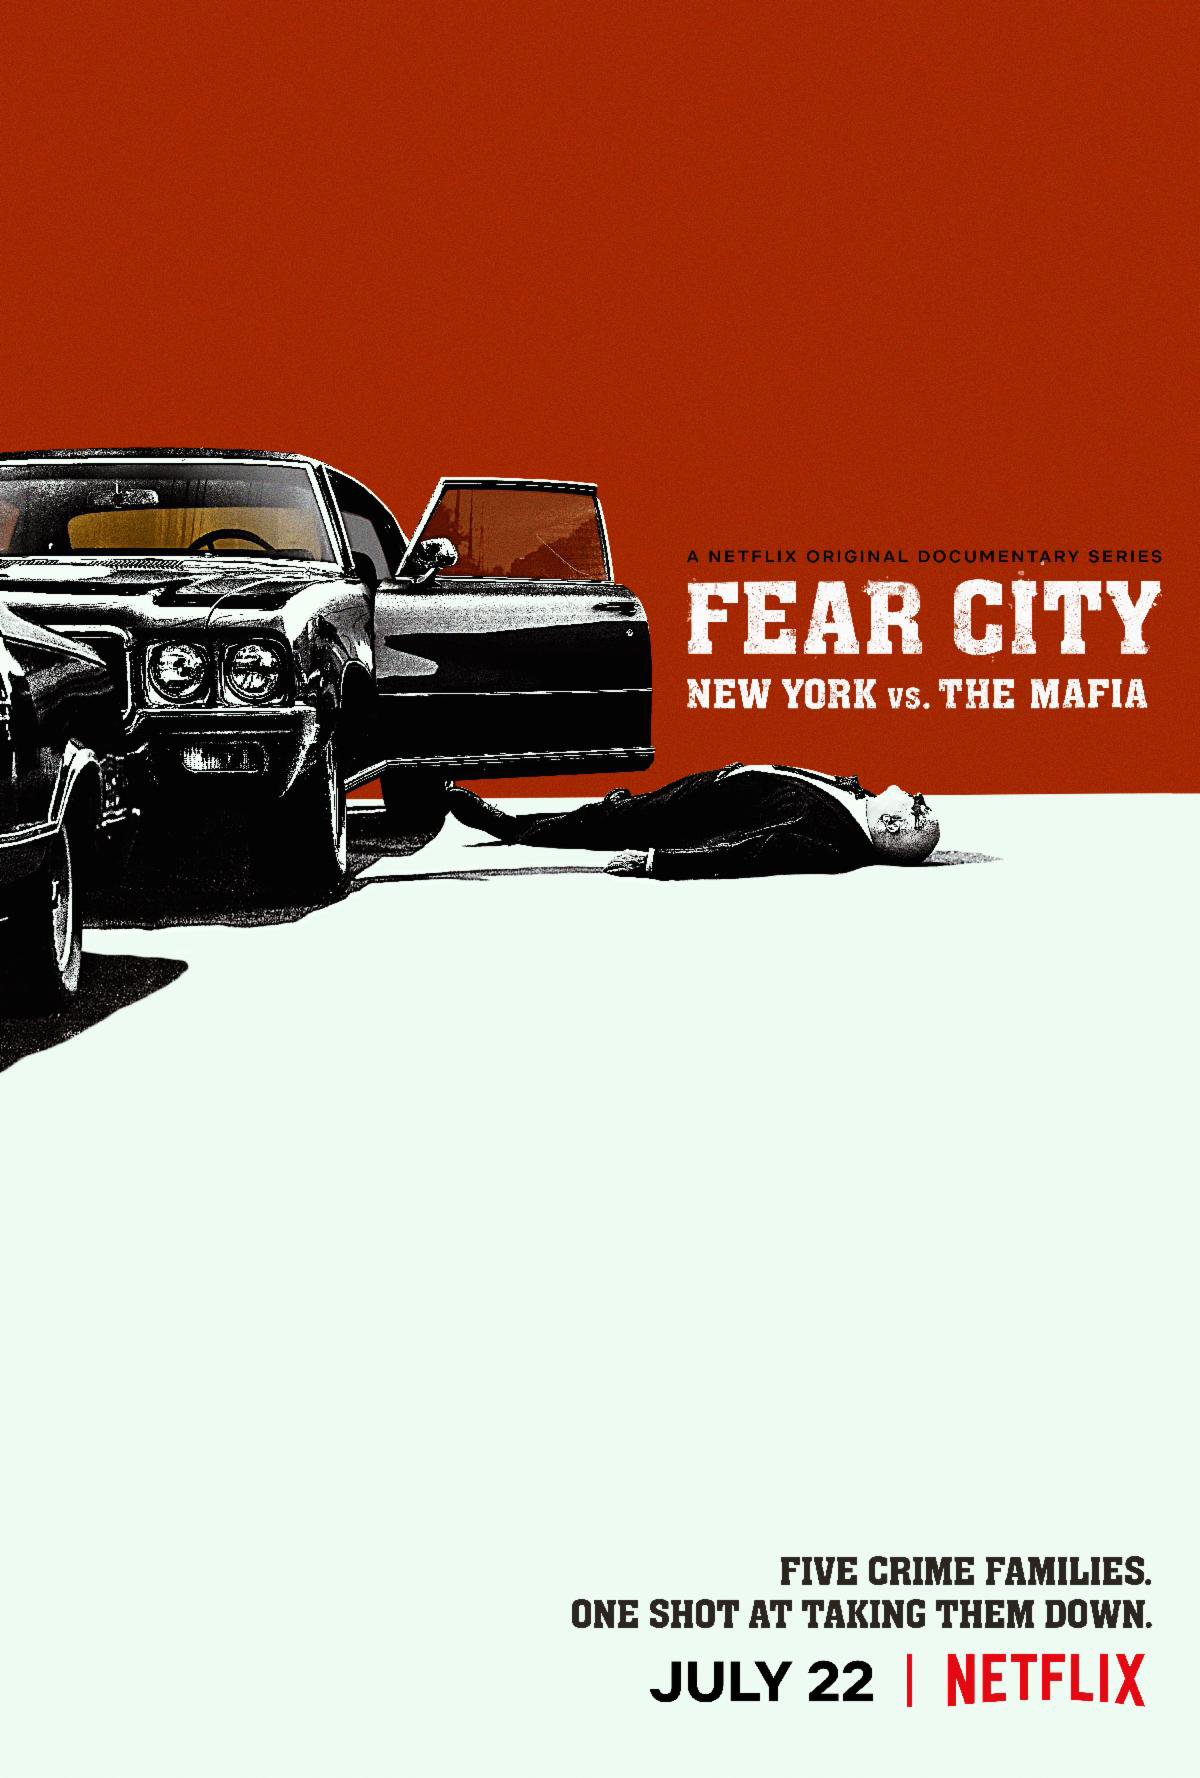 FEAR CITY: NEW YORK vs. THE MAFIA